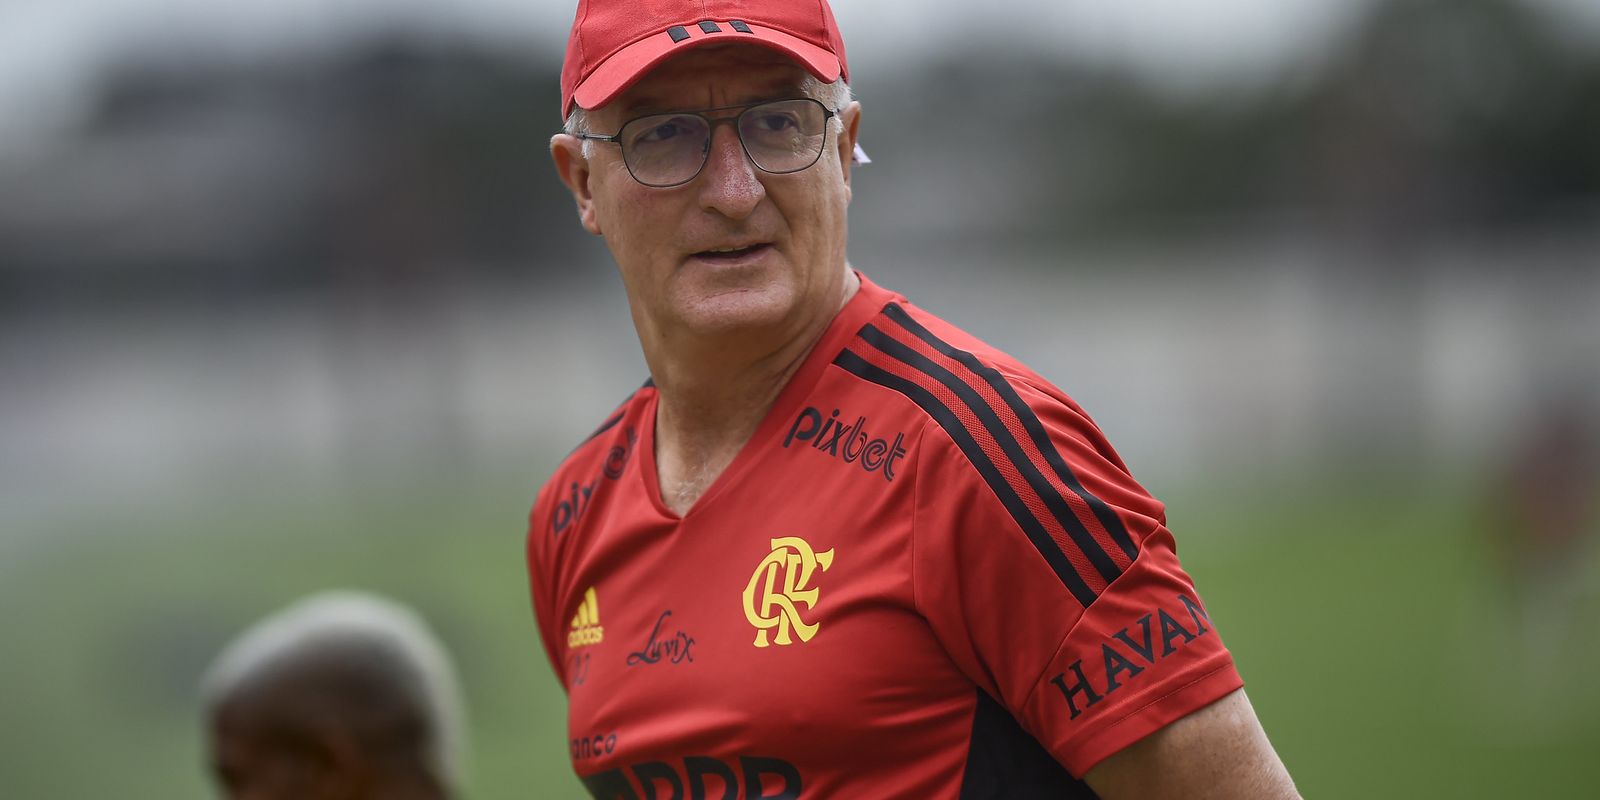 Técnicos brasileiros ex-Seleção dividem a liderança do Campeonato